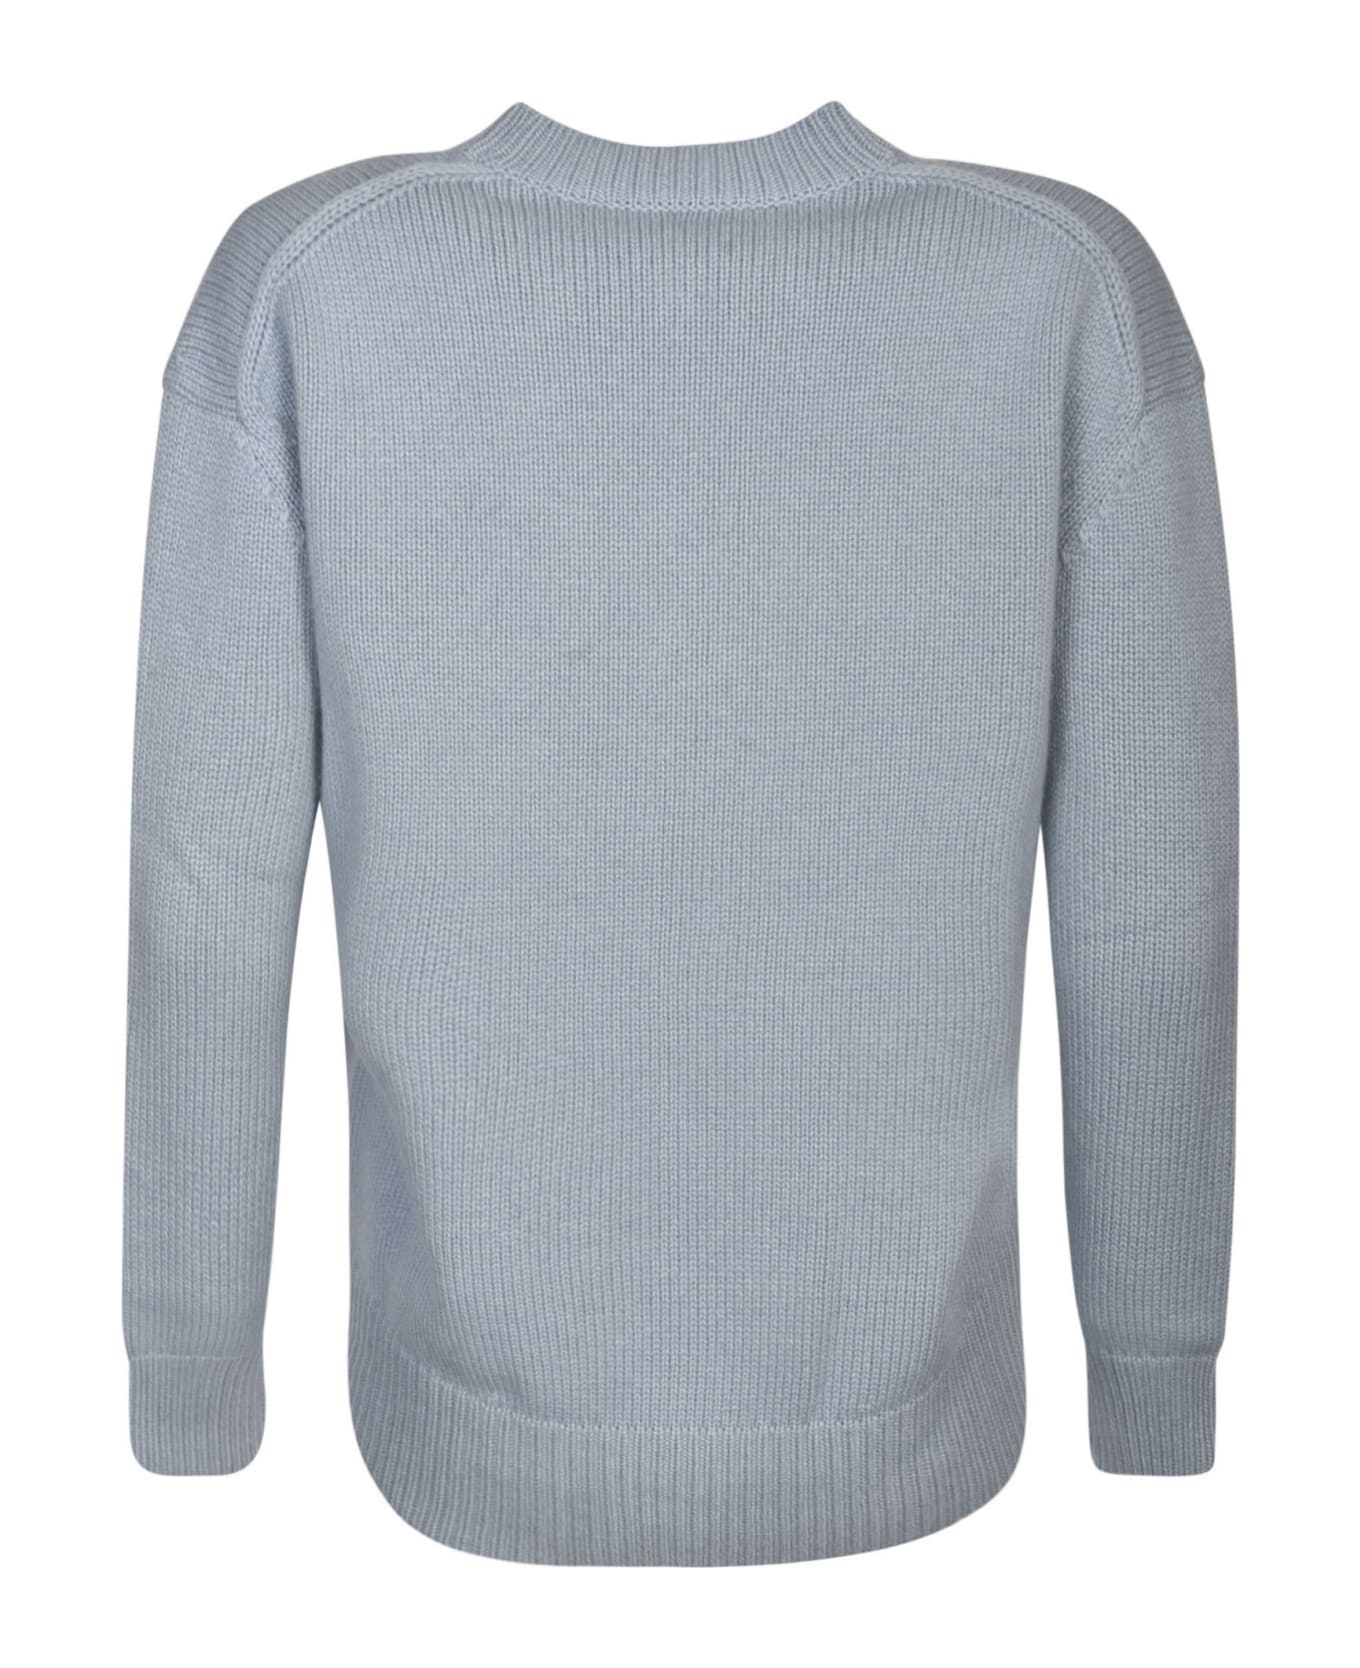 'S Max Mara Rib Trim Plain Knit Sweater - AZURE